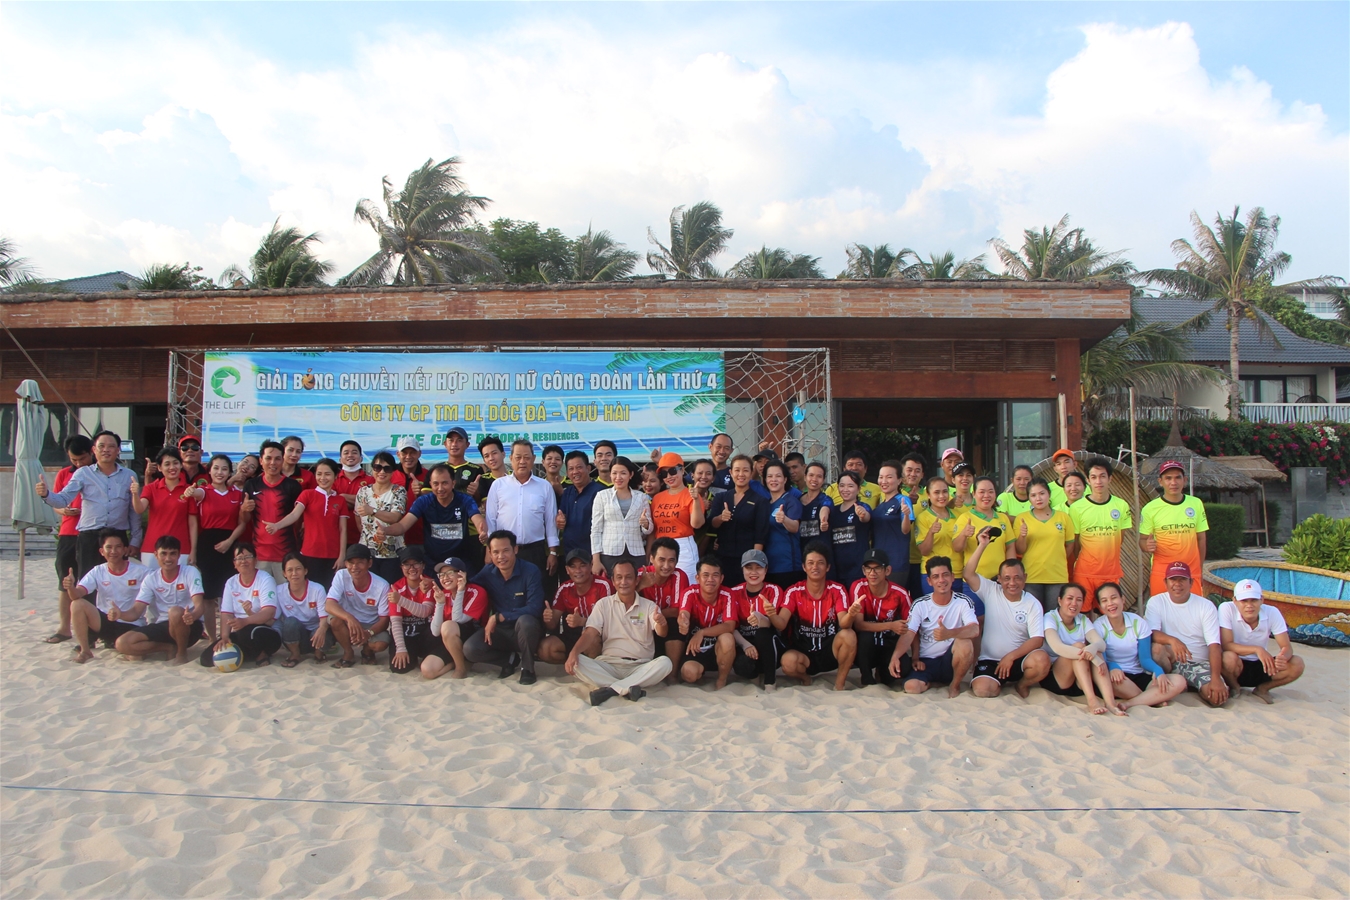 CĐCS Cty CP TMDL Dốc Đá Phú Hài tổ chức thành công giải bóng chuyền phối hợp nam nữ 